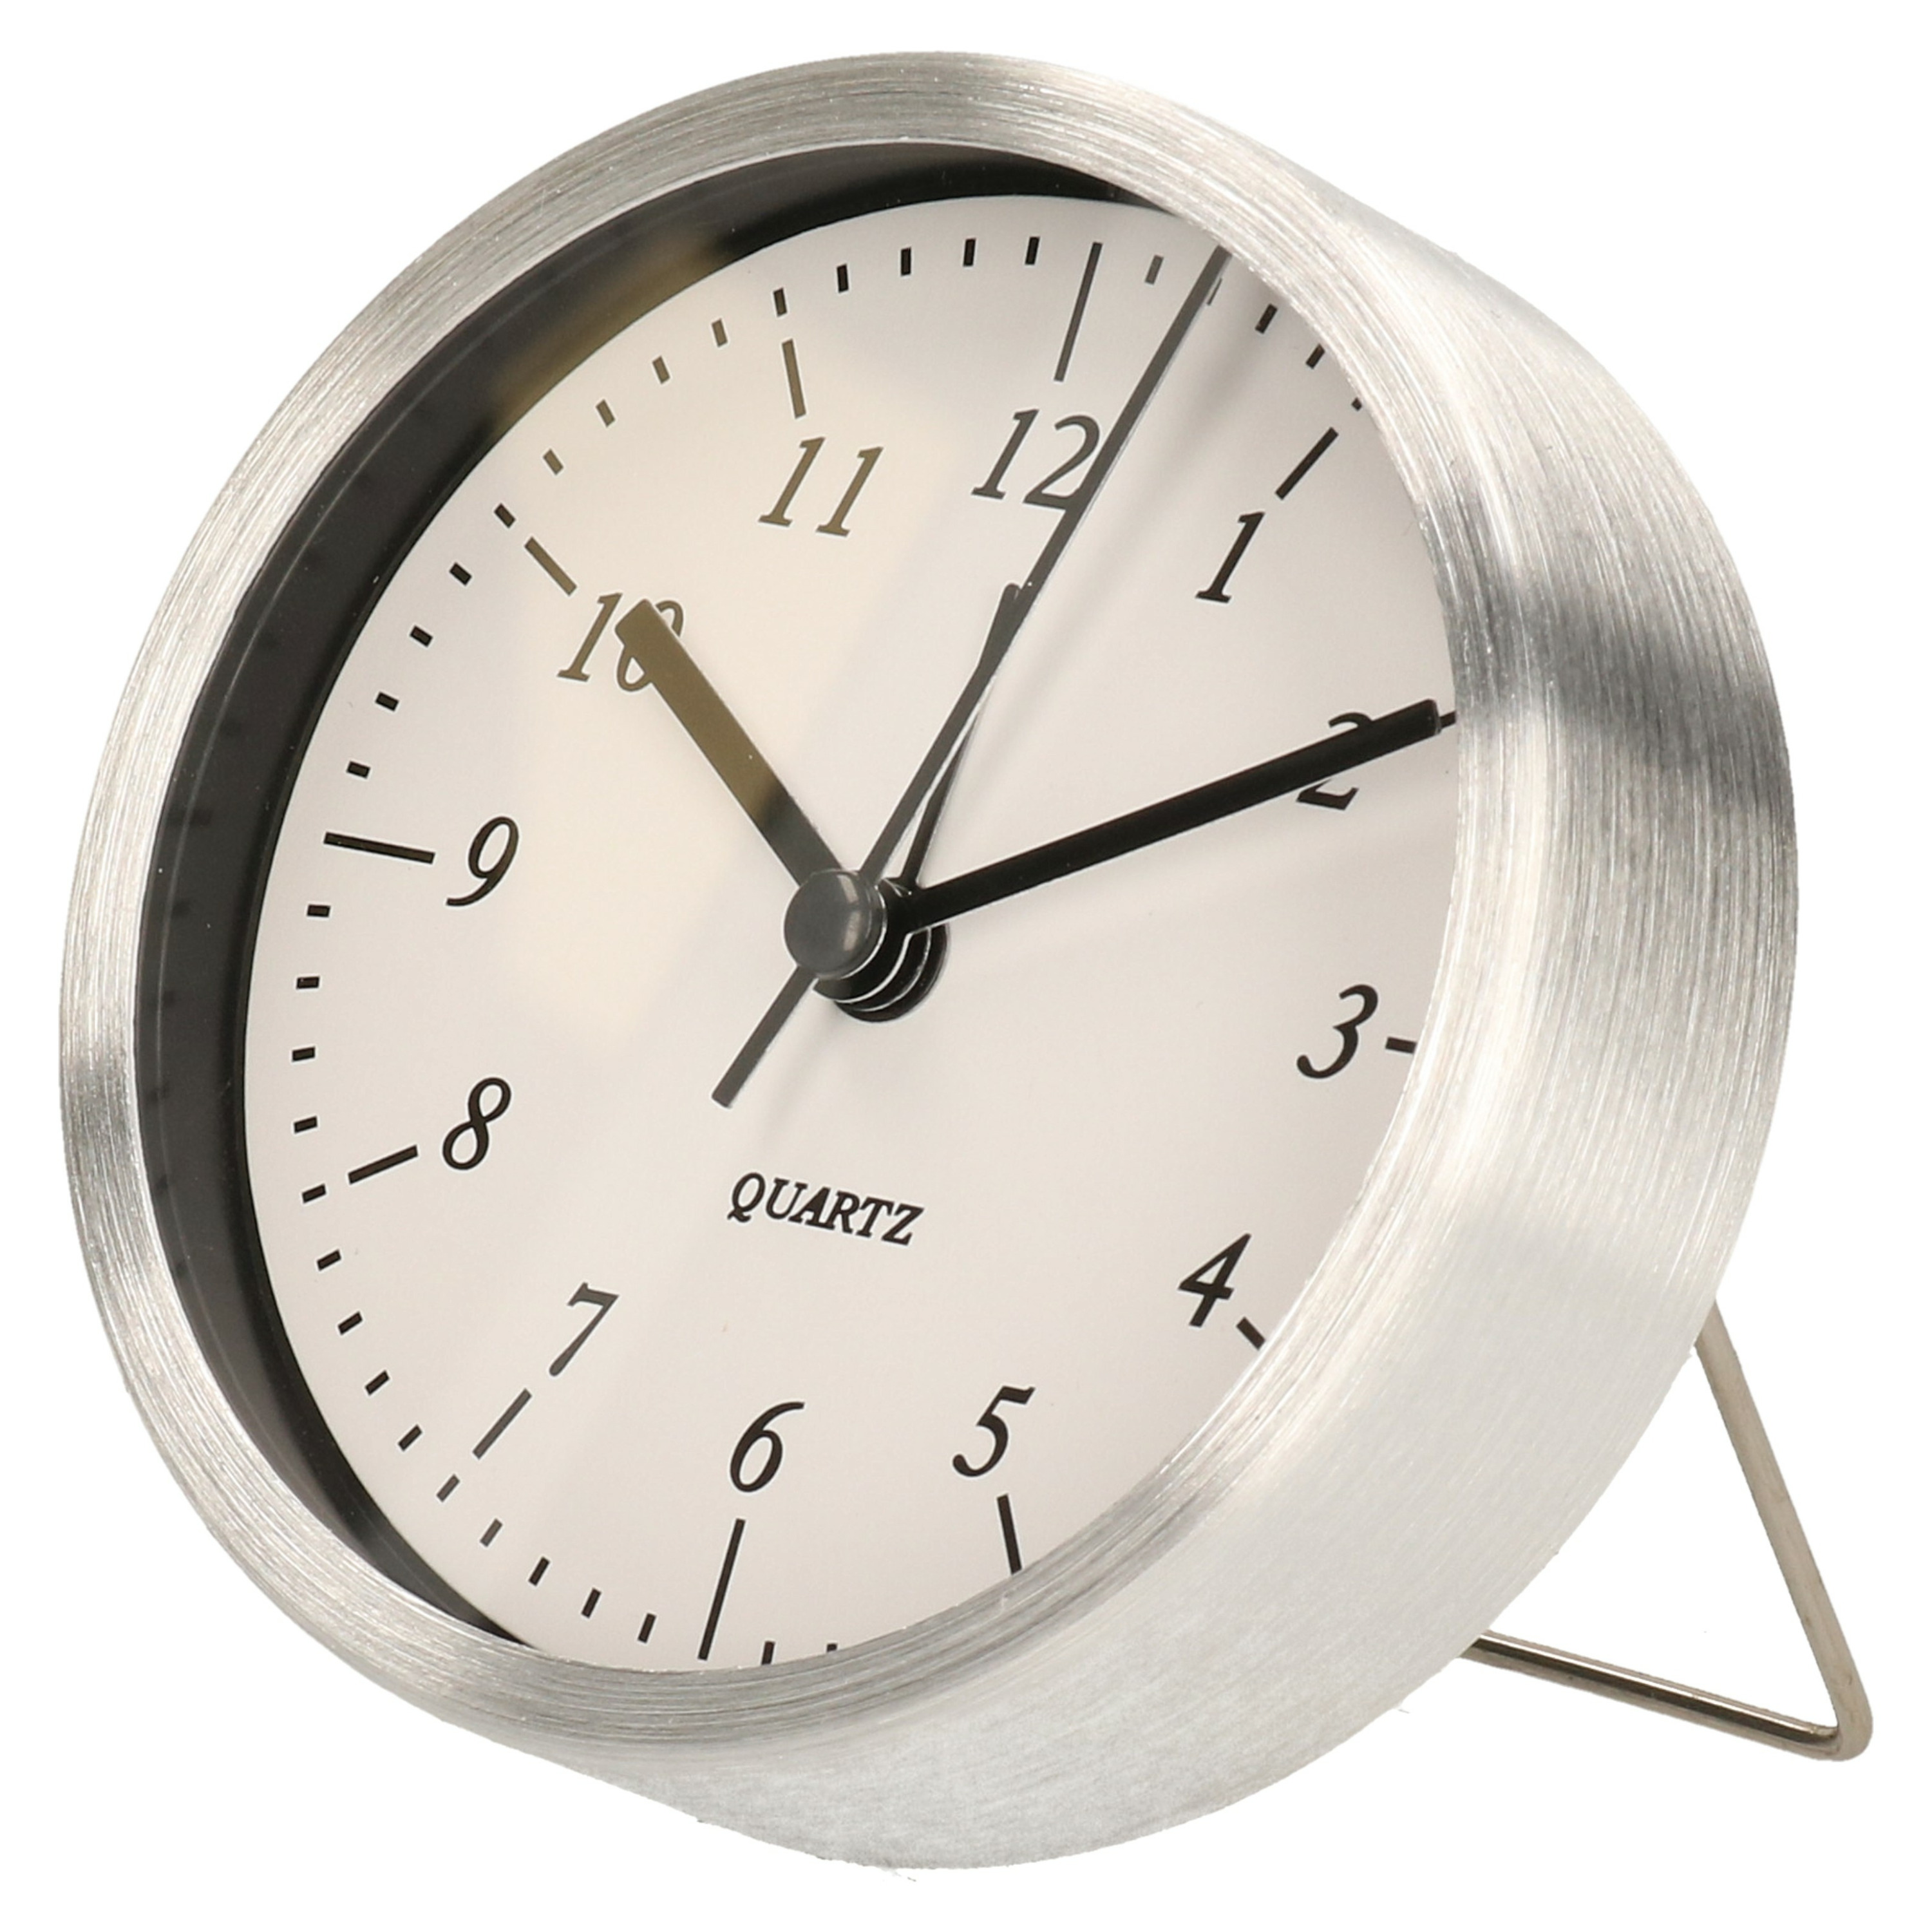 Wekker/alarmklok analoog - zilver/wit - aluminium/glas - 9 x 2,5 cm - staand model